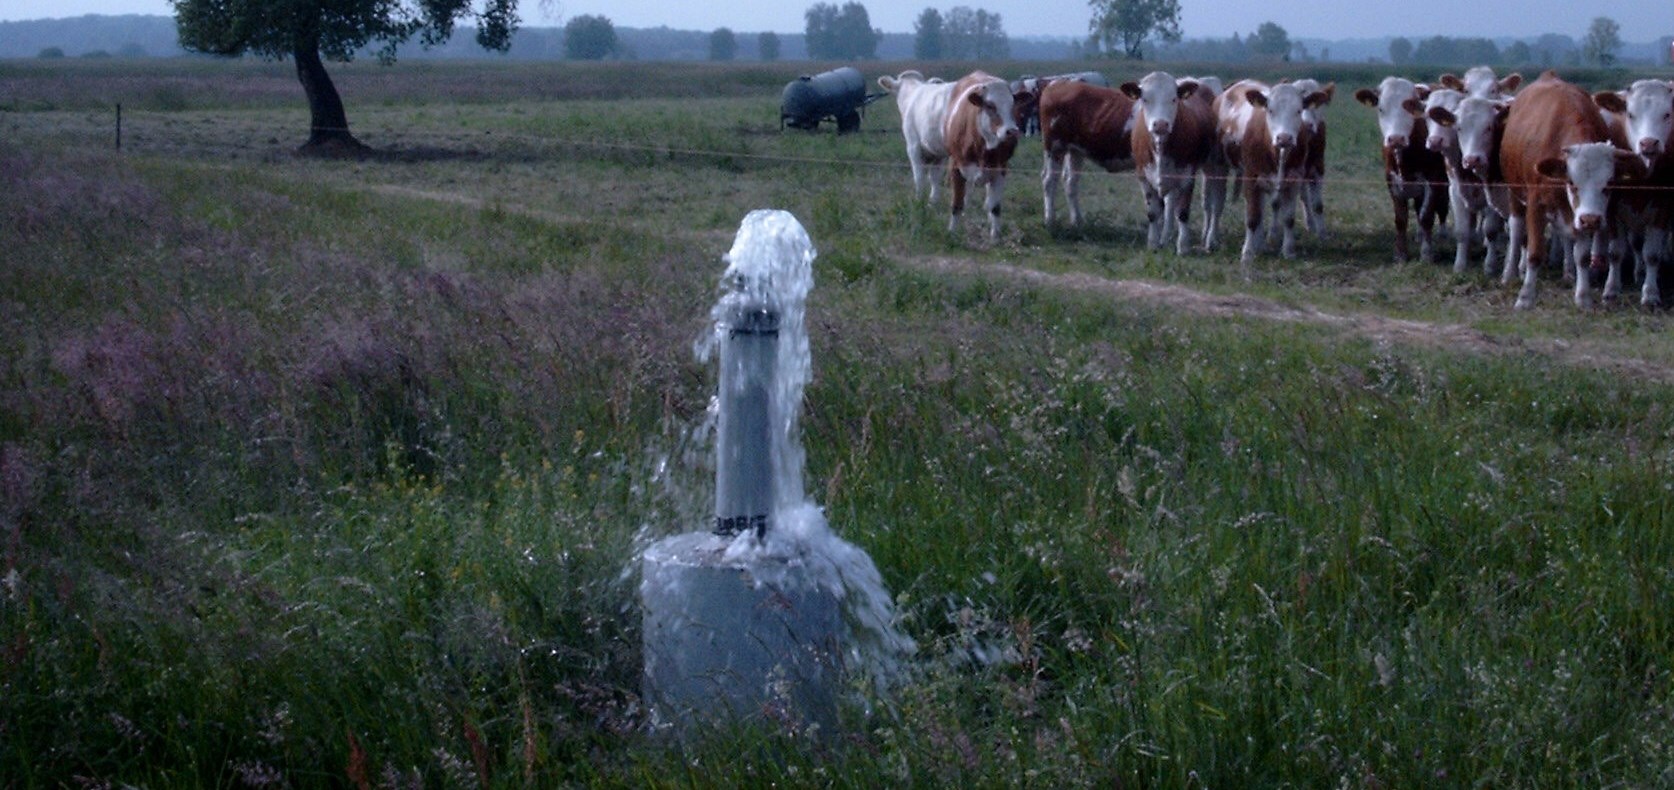 Artesicher Brunnen auf einer Weide mit neugierigen Kühen